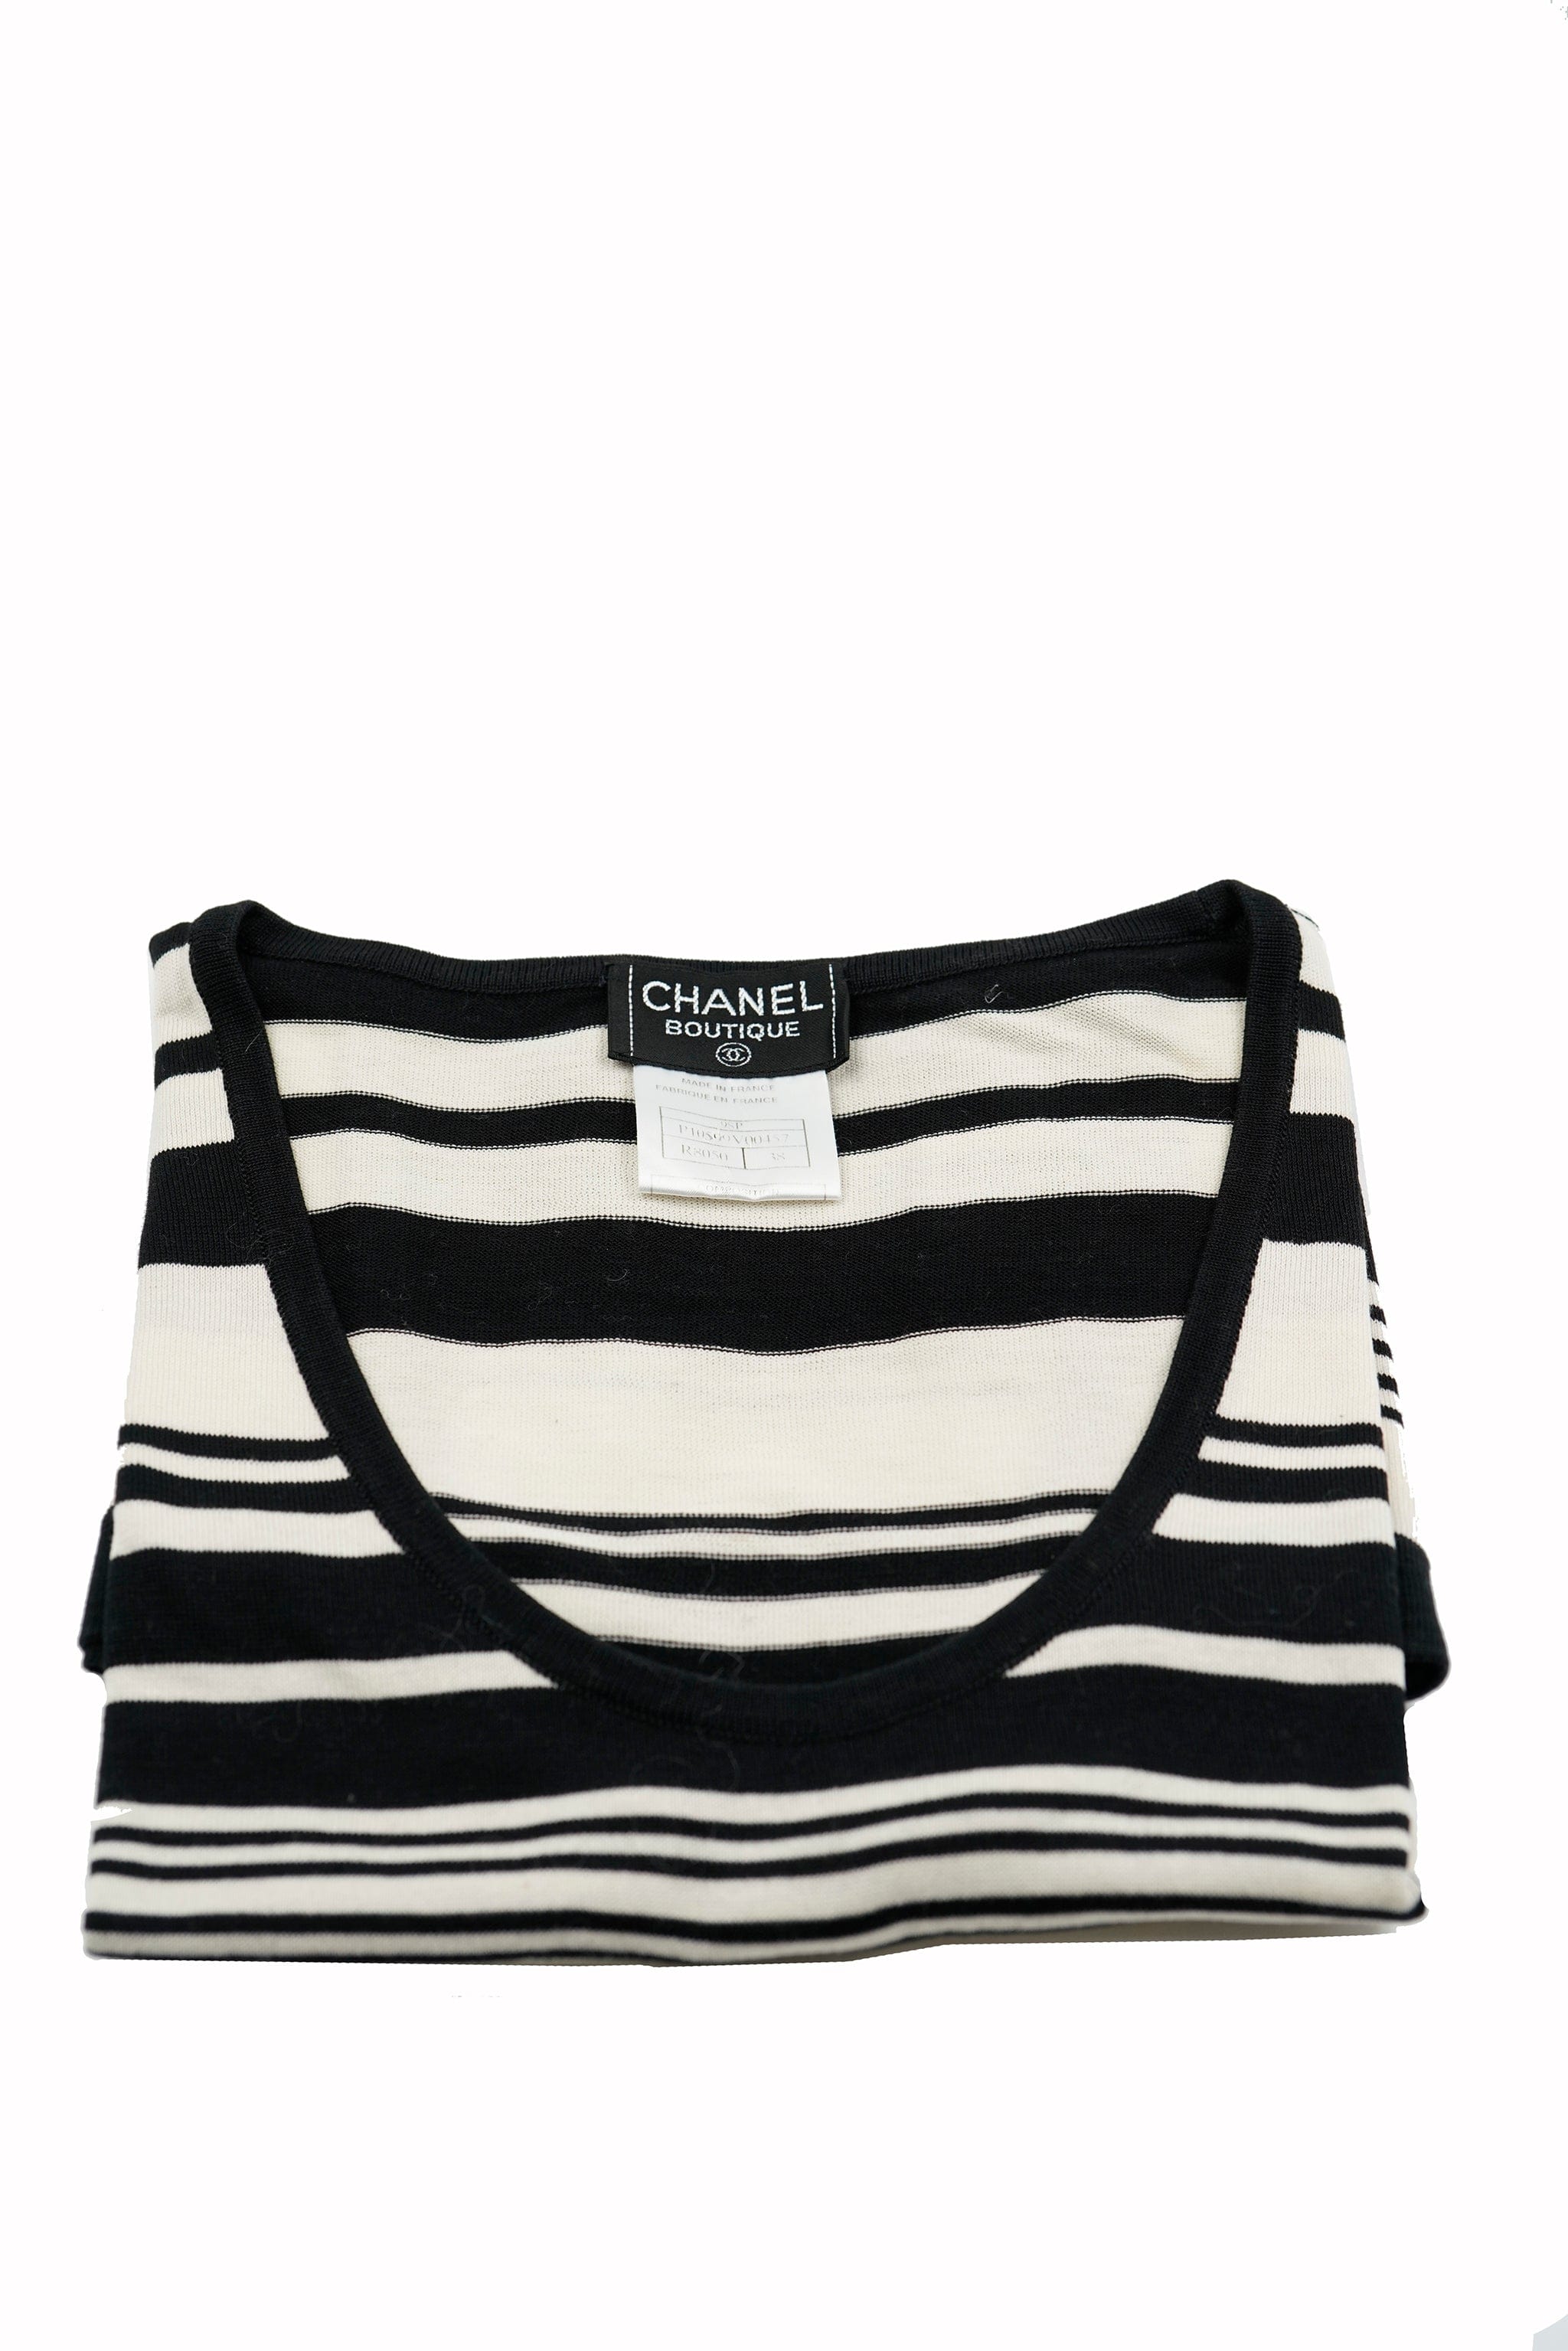 Chanel Chanel 98P CC Stripe Top Black White ASL5426